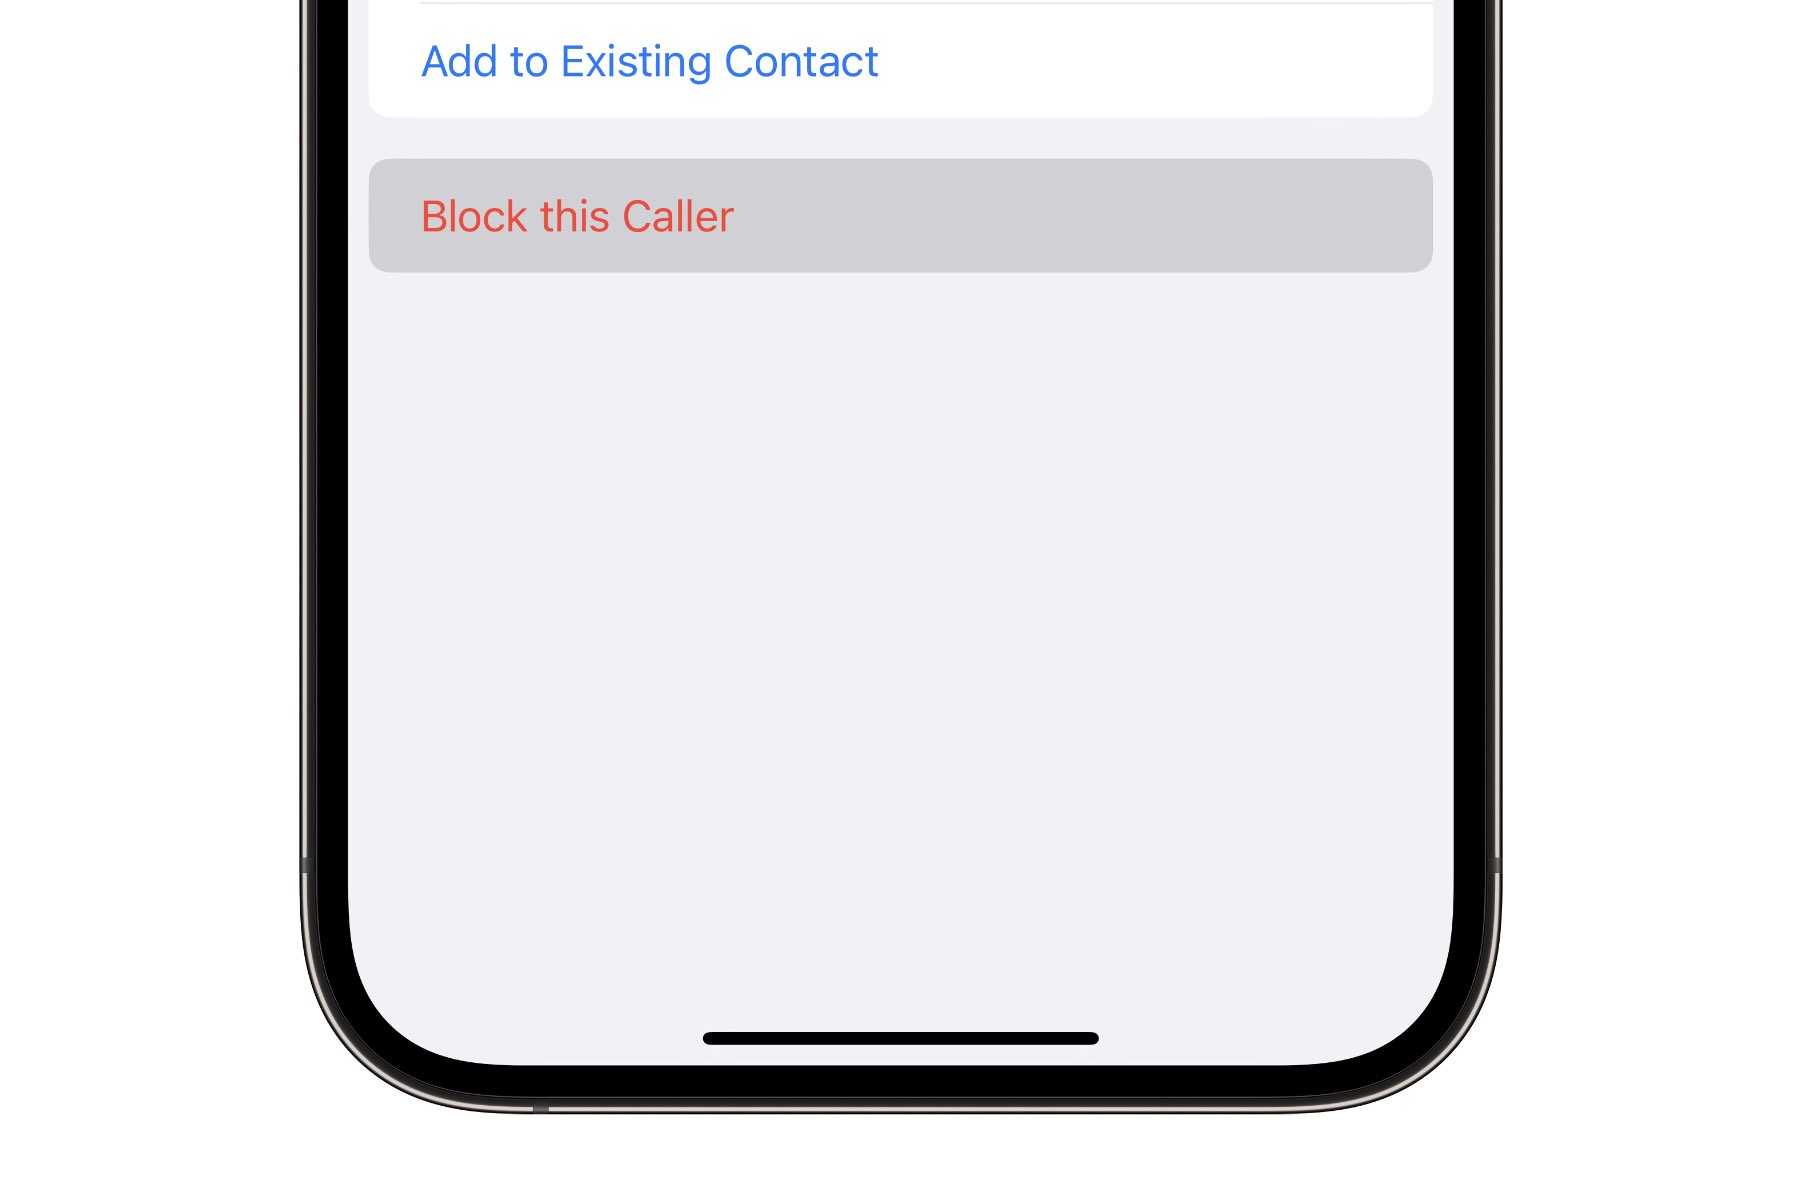 Opzione per bloccare il chiamante nell'app Messaggi di iPhone